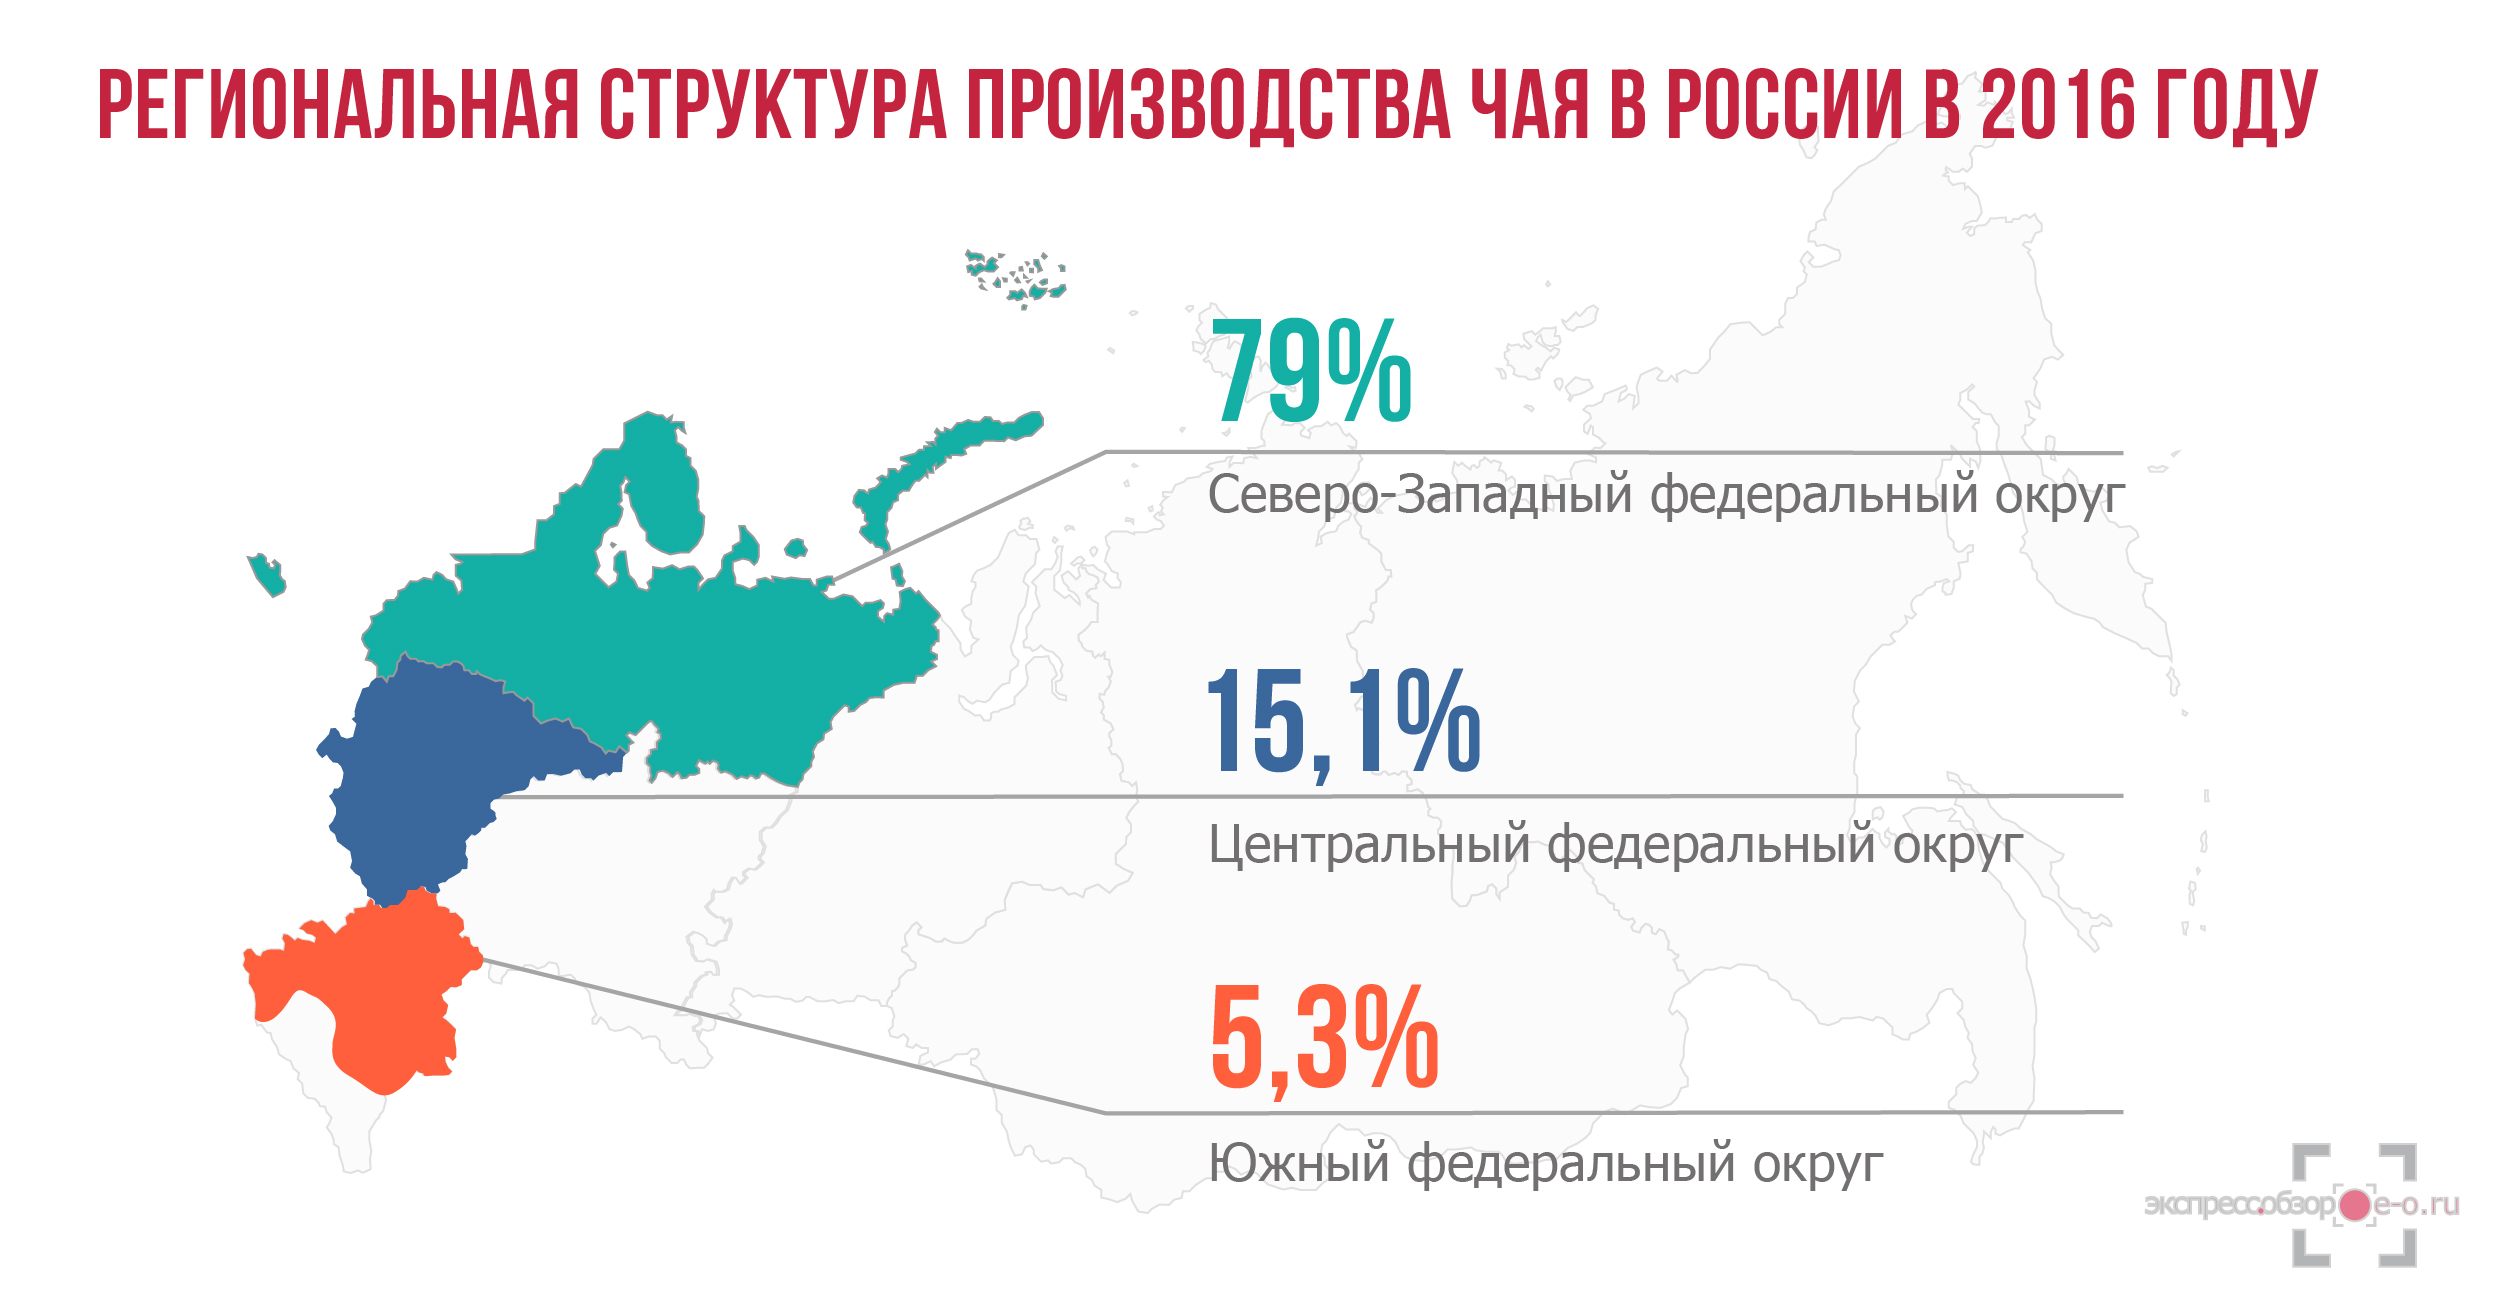 Производство чая в России в 2016 году